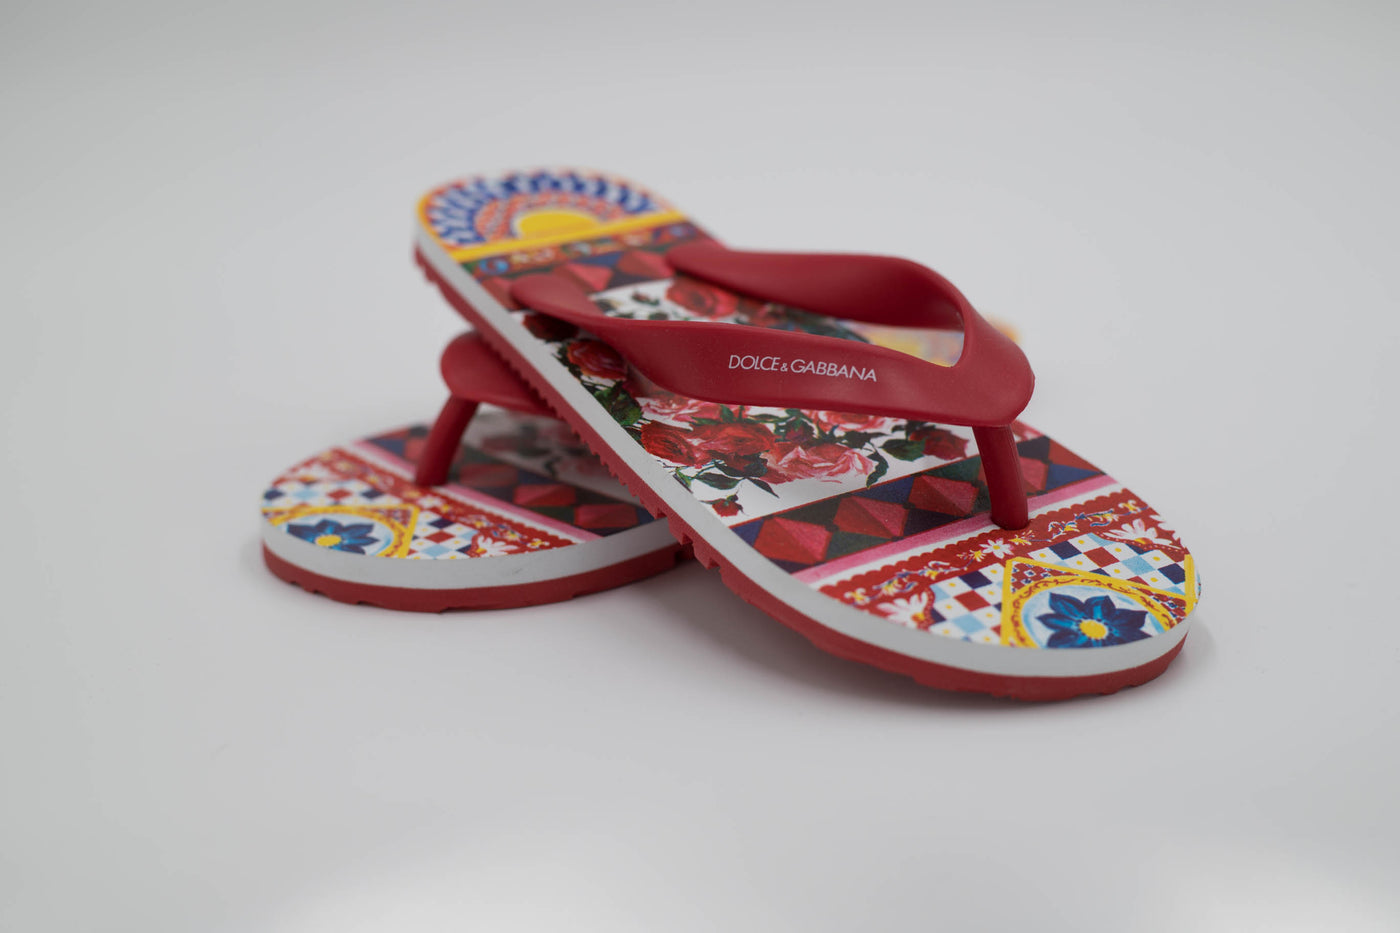 Dolce & Gabbana – Strapless Sandals Red Beachwear